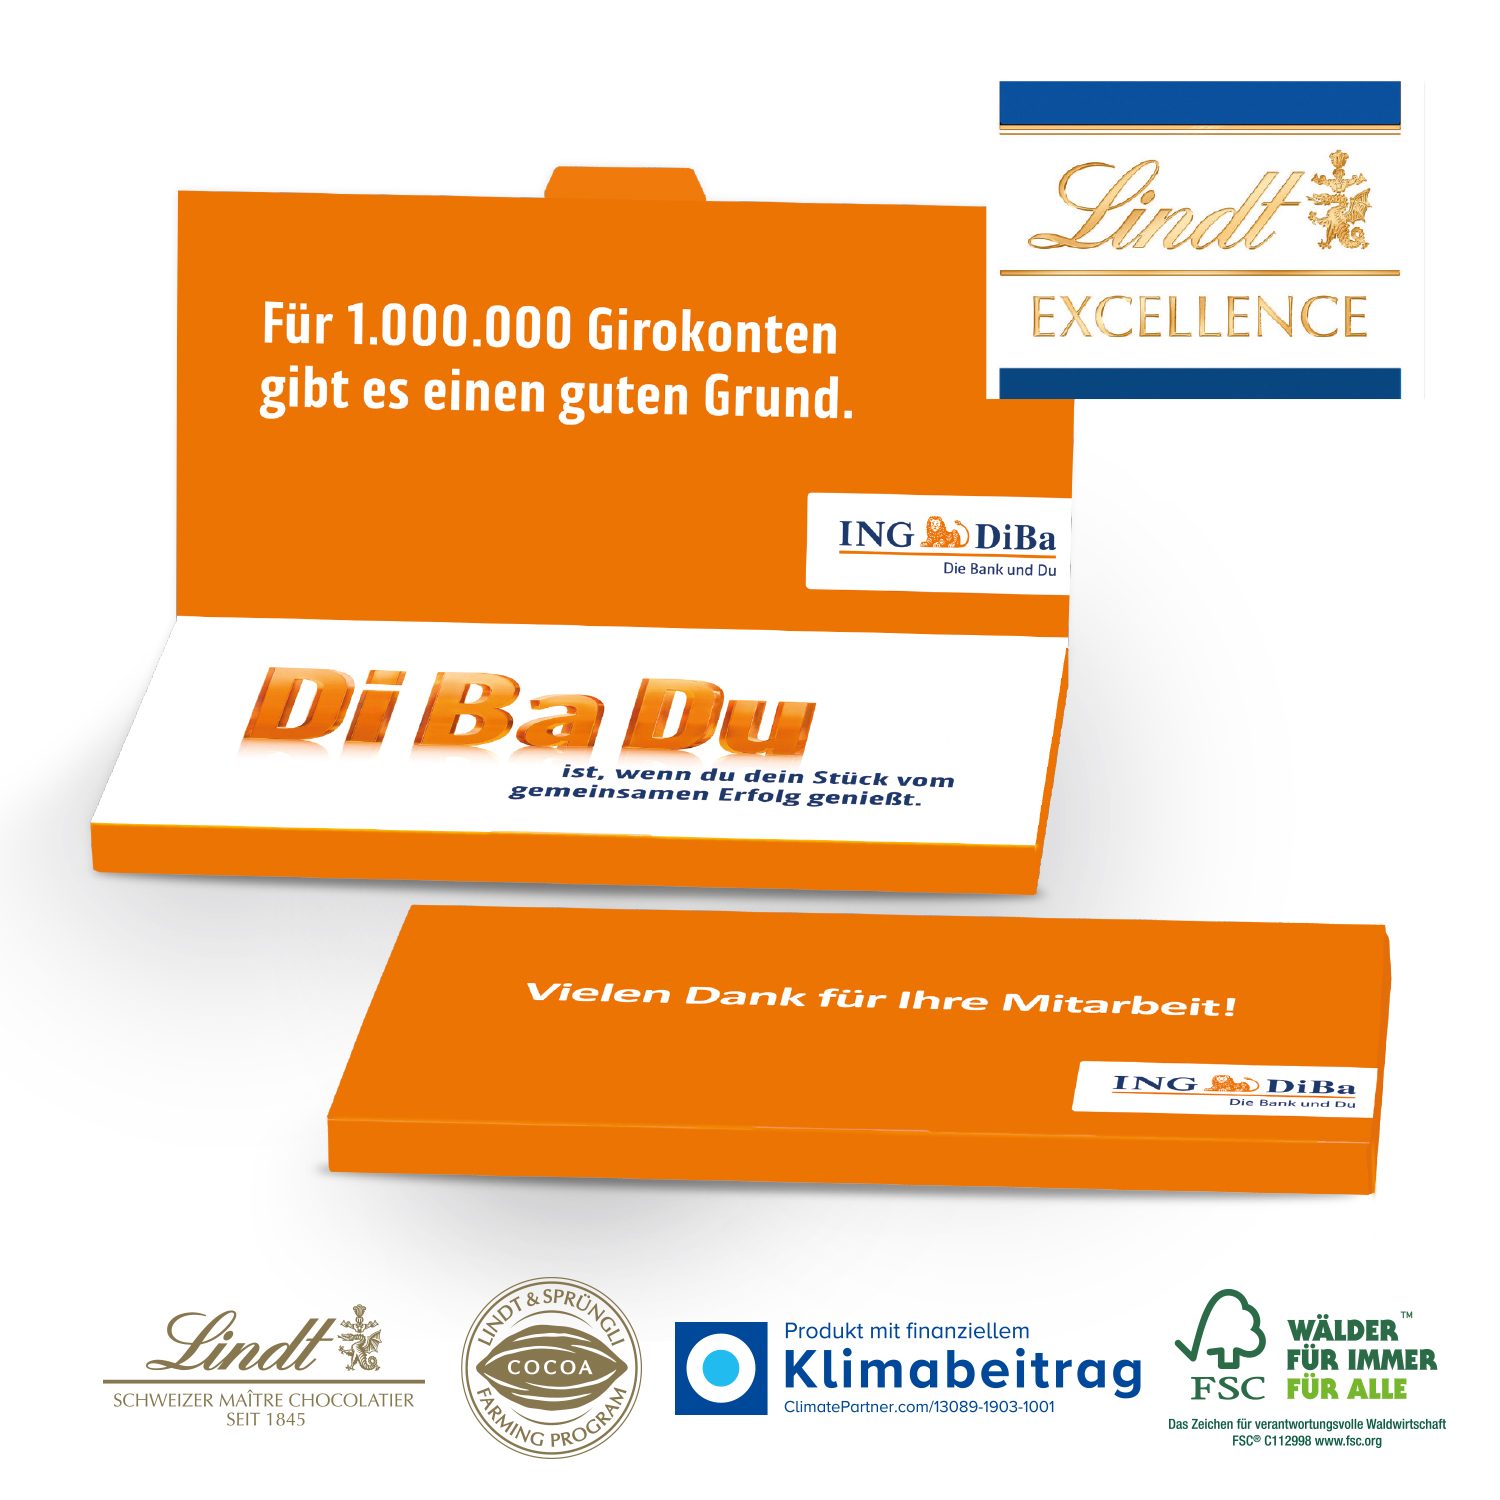 Grußkarte mit Schokoladentafel von Lindt Excellence title=